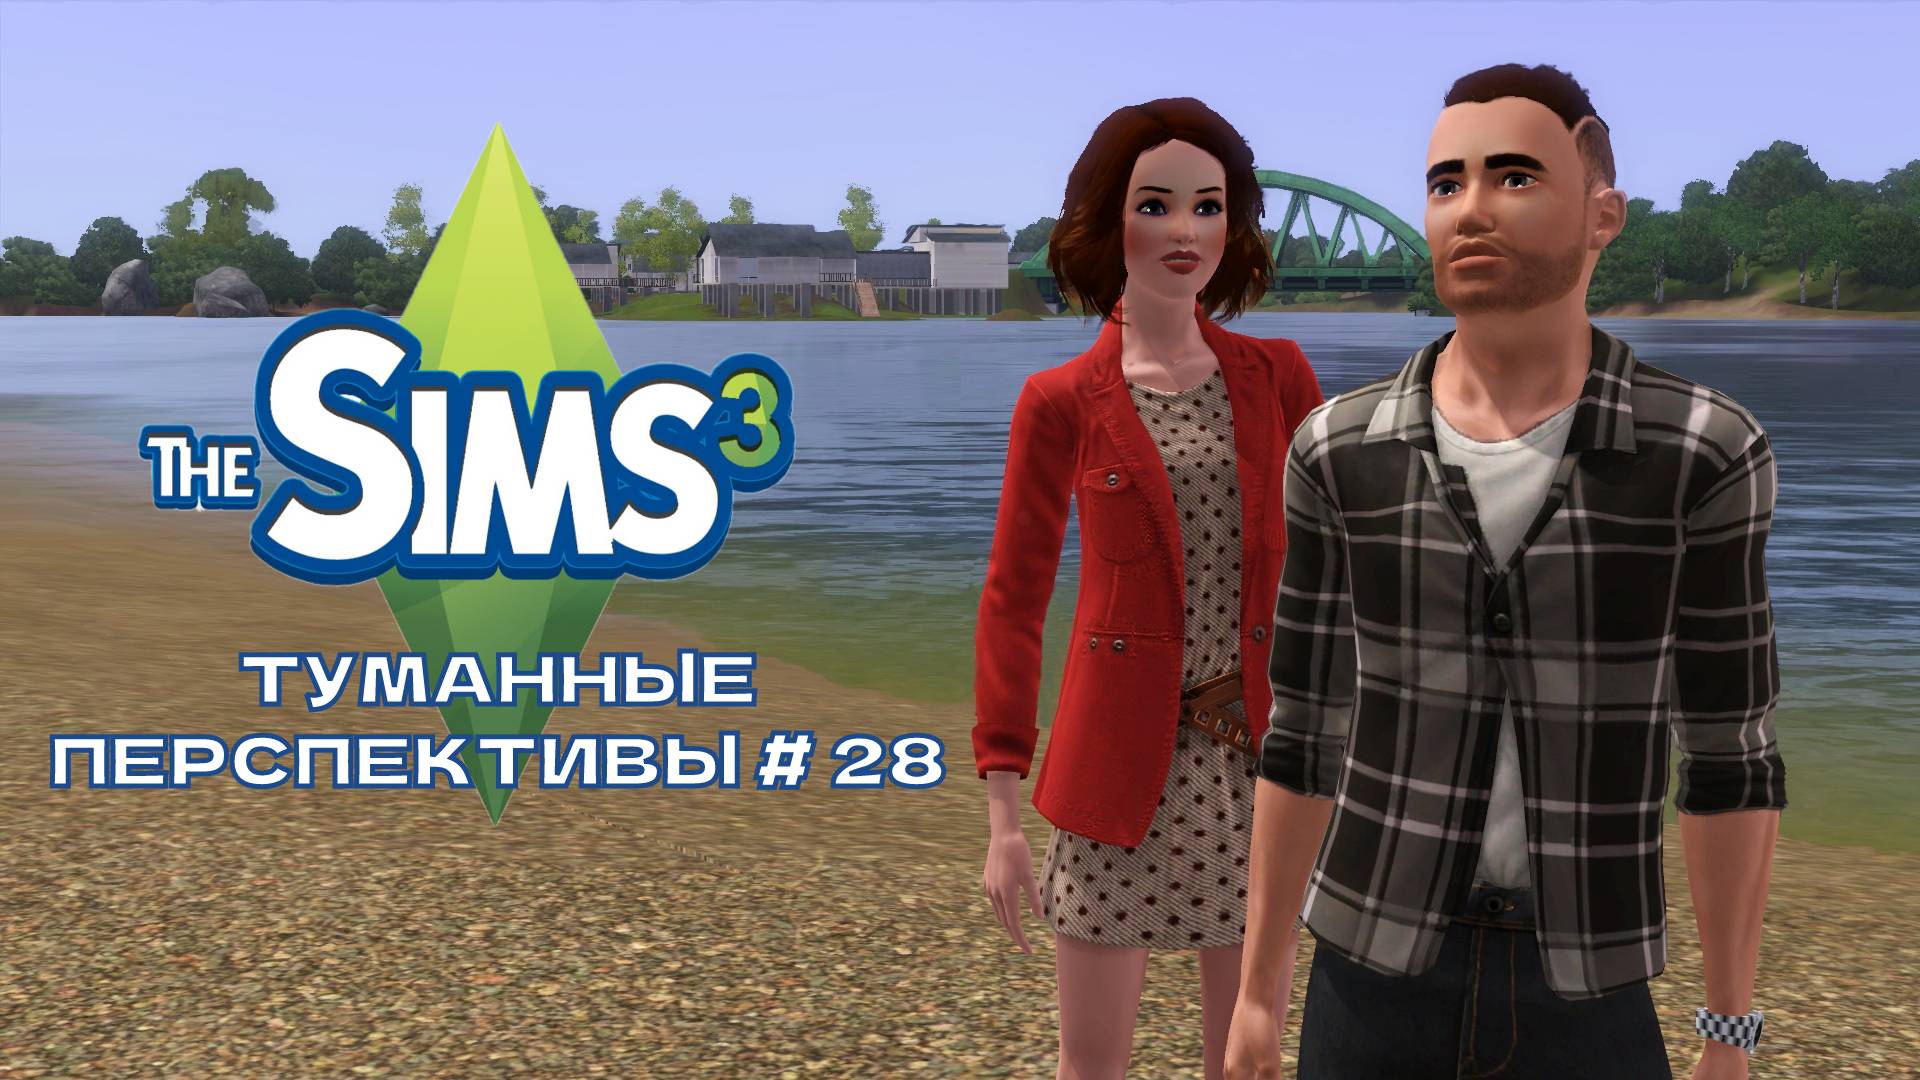 The Sims 3. Туманные перспективы #28.Накануне праздника